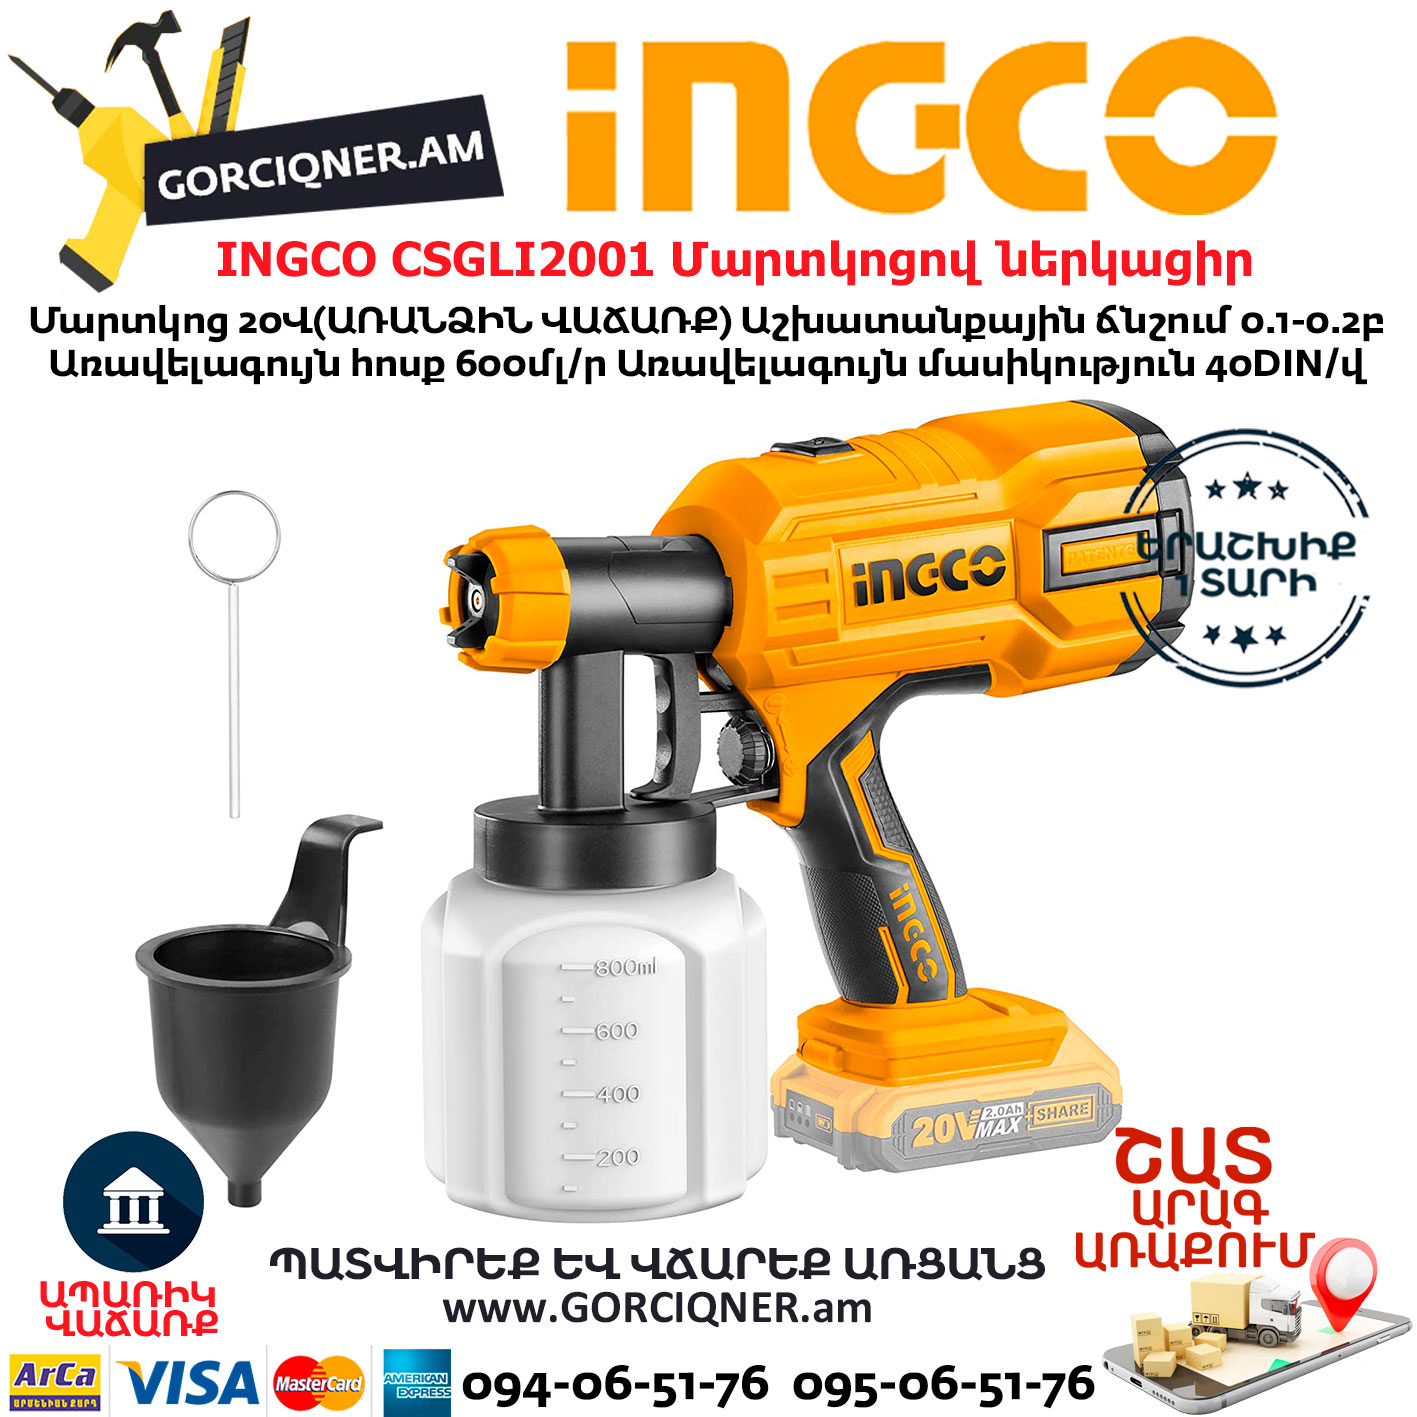 INGCO CSGLI20402 Pistolet à peinture sans fil - 20V, 800 mL